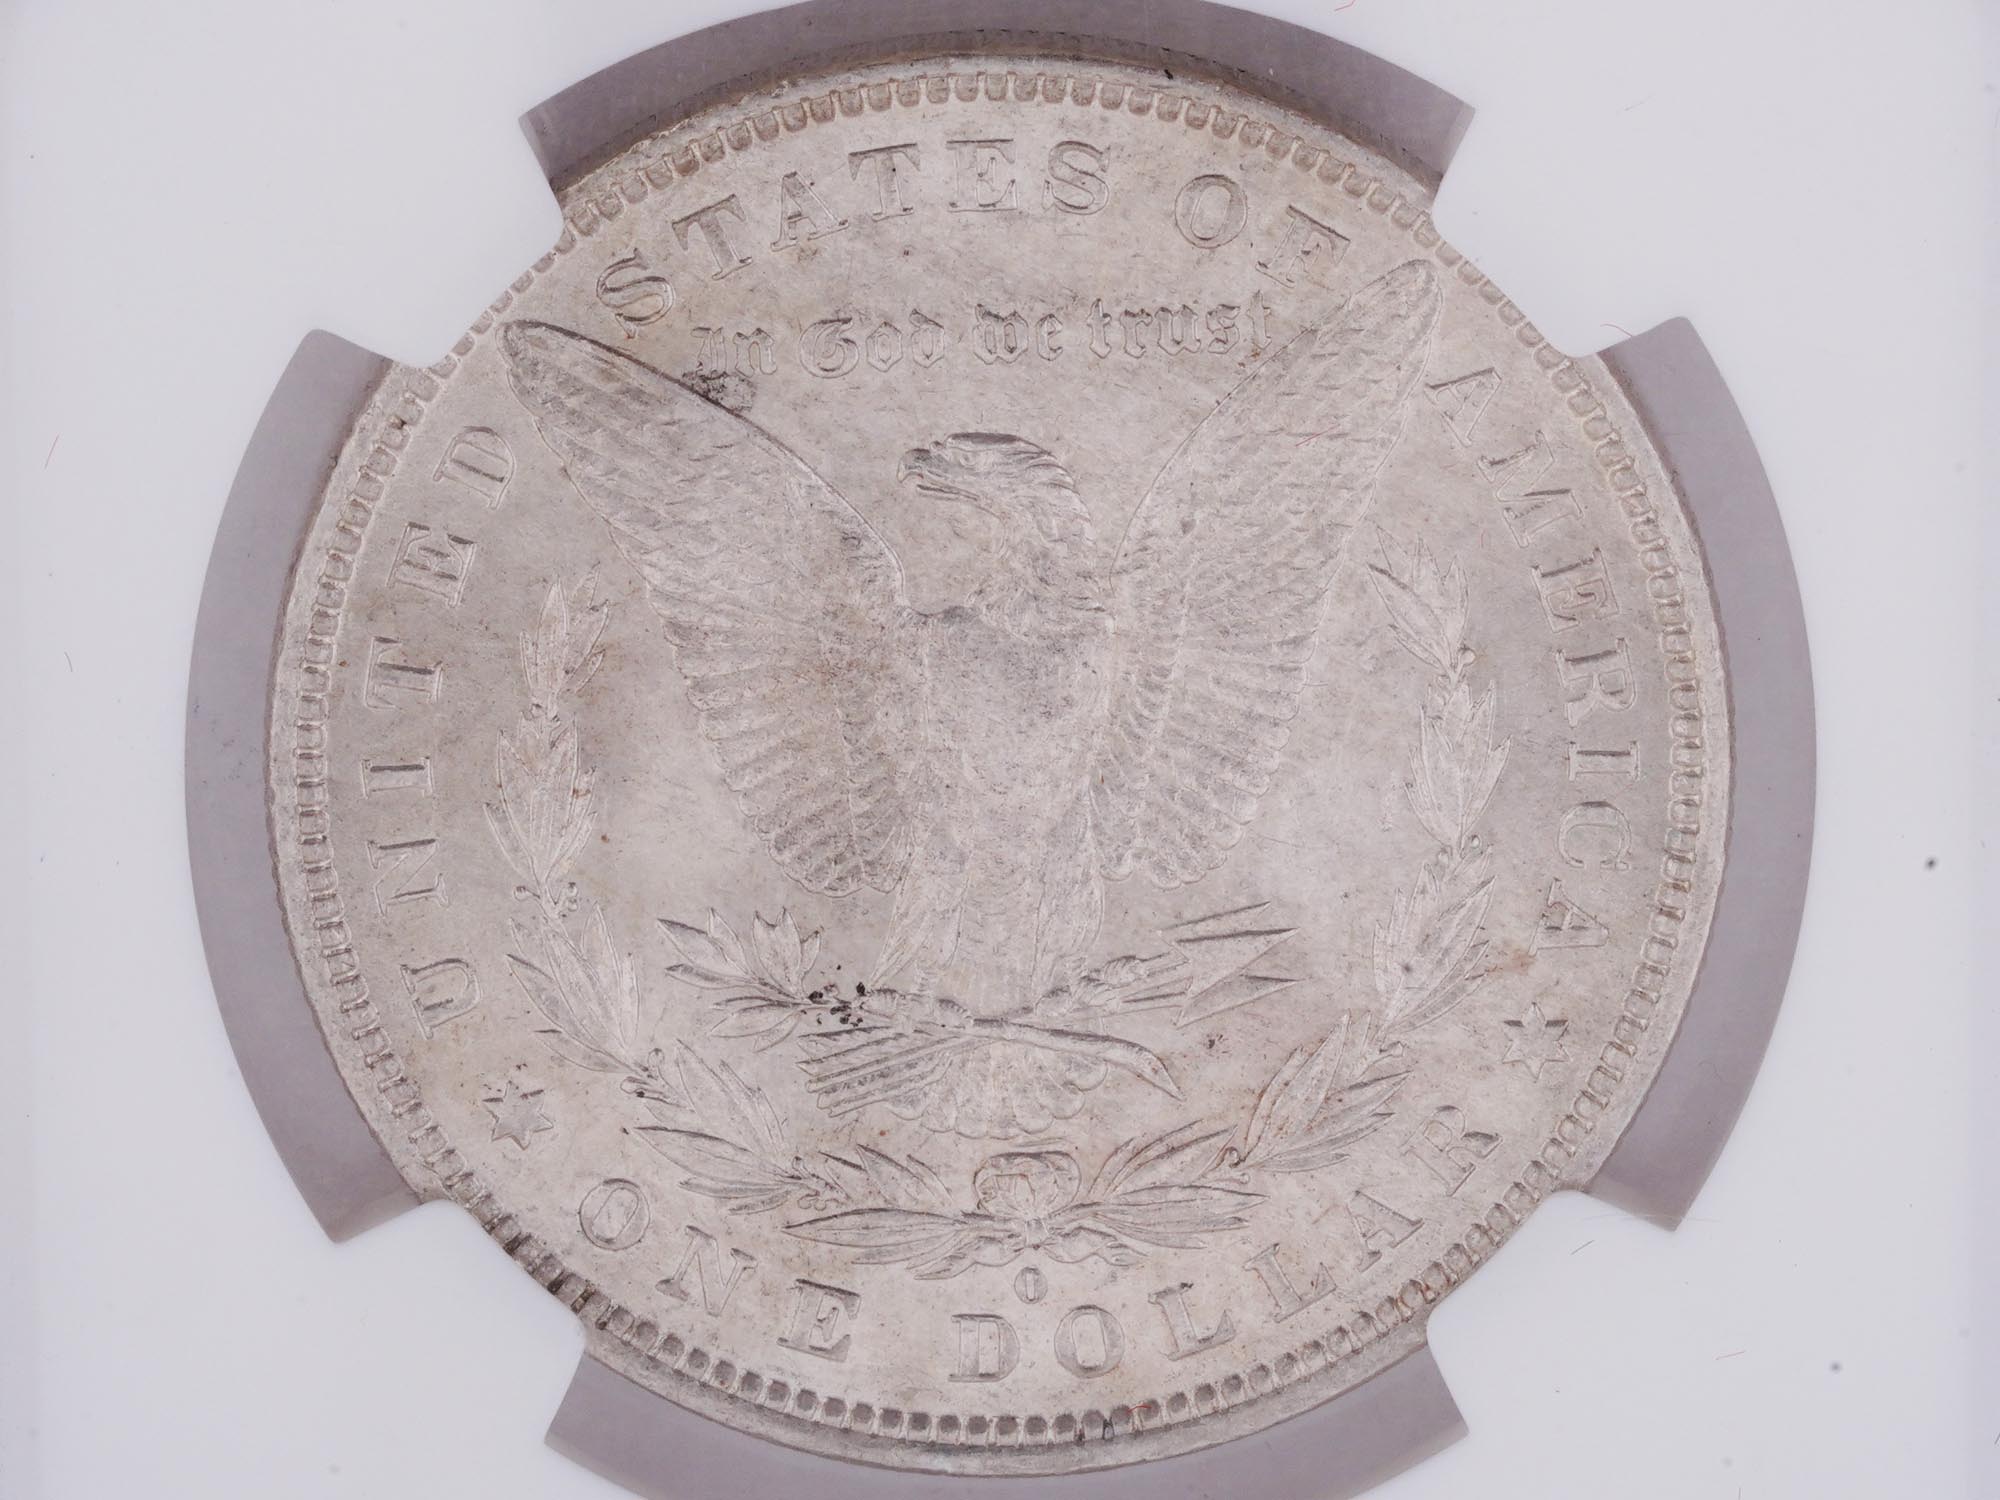 ANTIQUE 1881 AMERICAN MORGAN SILVER DOLLAR COIN PIC-2